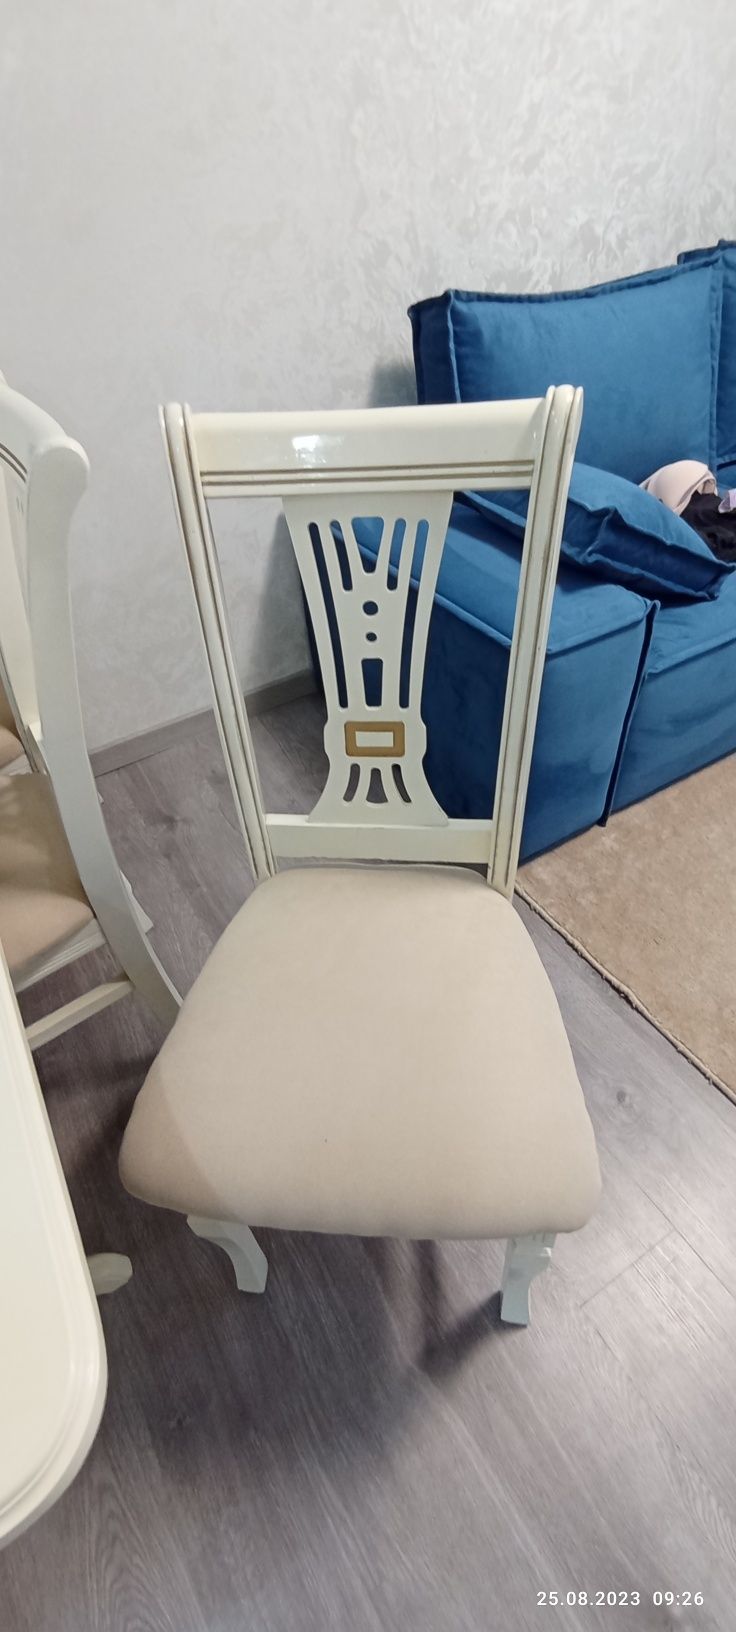 Продается стол деревянный белый со стульями  состояние отличное размер